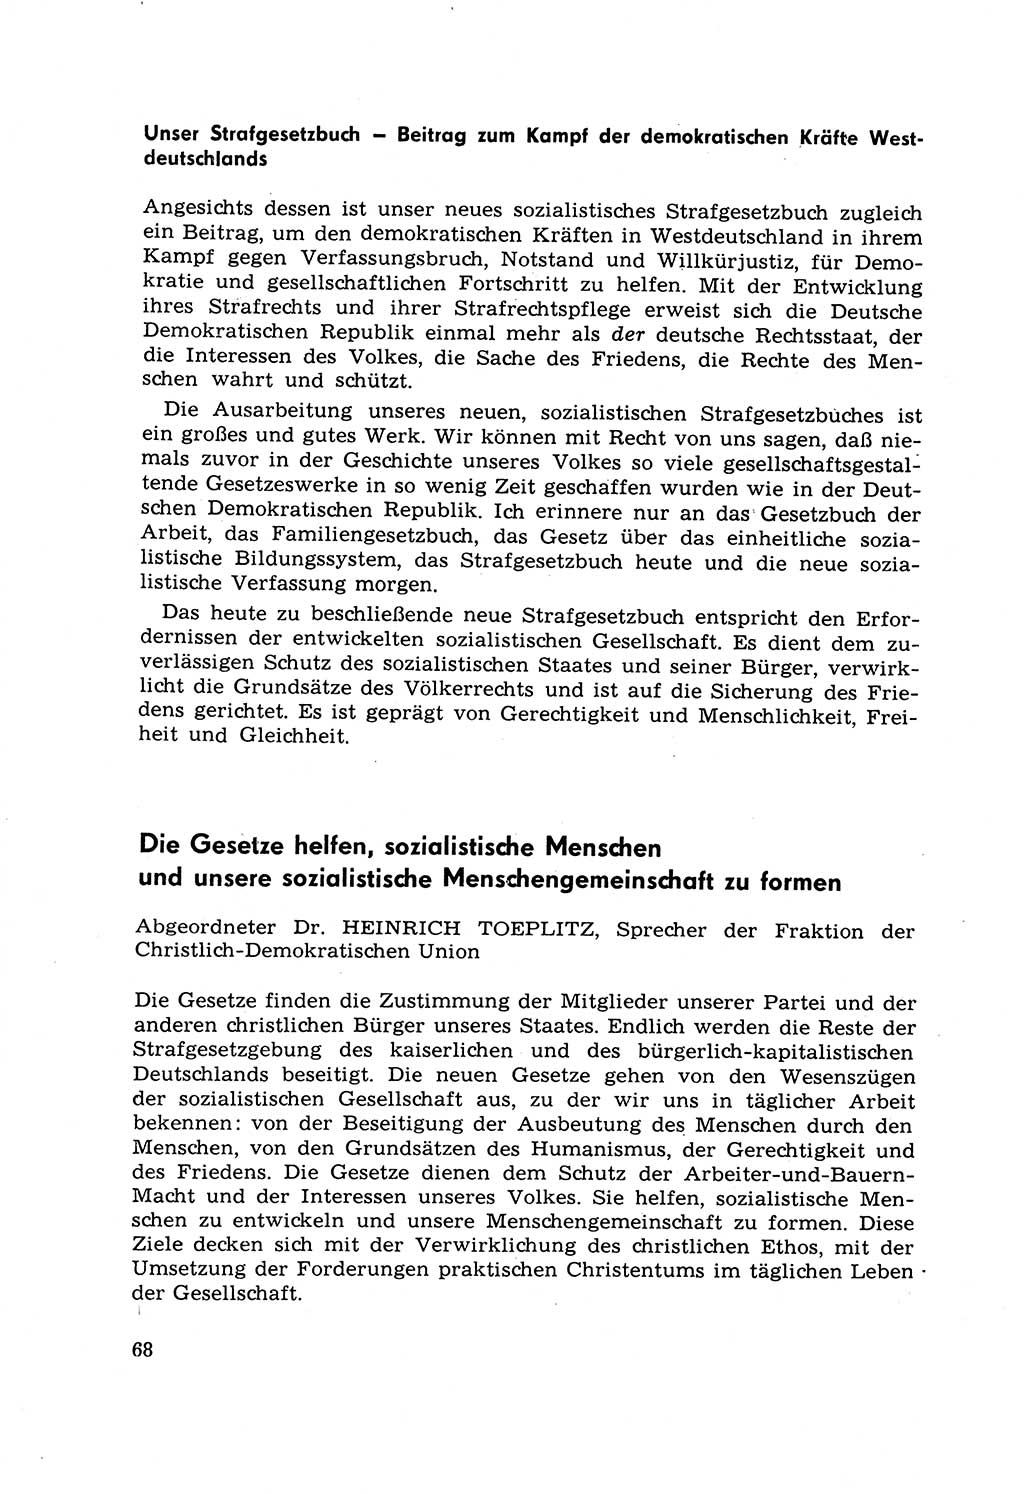 Strafrecht [Deutsche Demokratische Republik (DDR)] 1968, Seite 68 (Strafr. DDR 1968, S. 68)